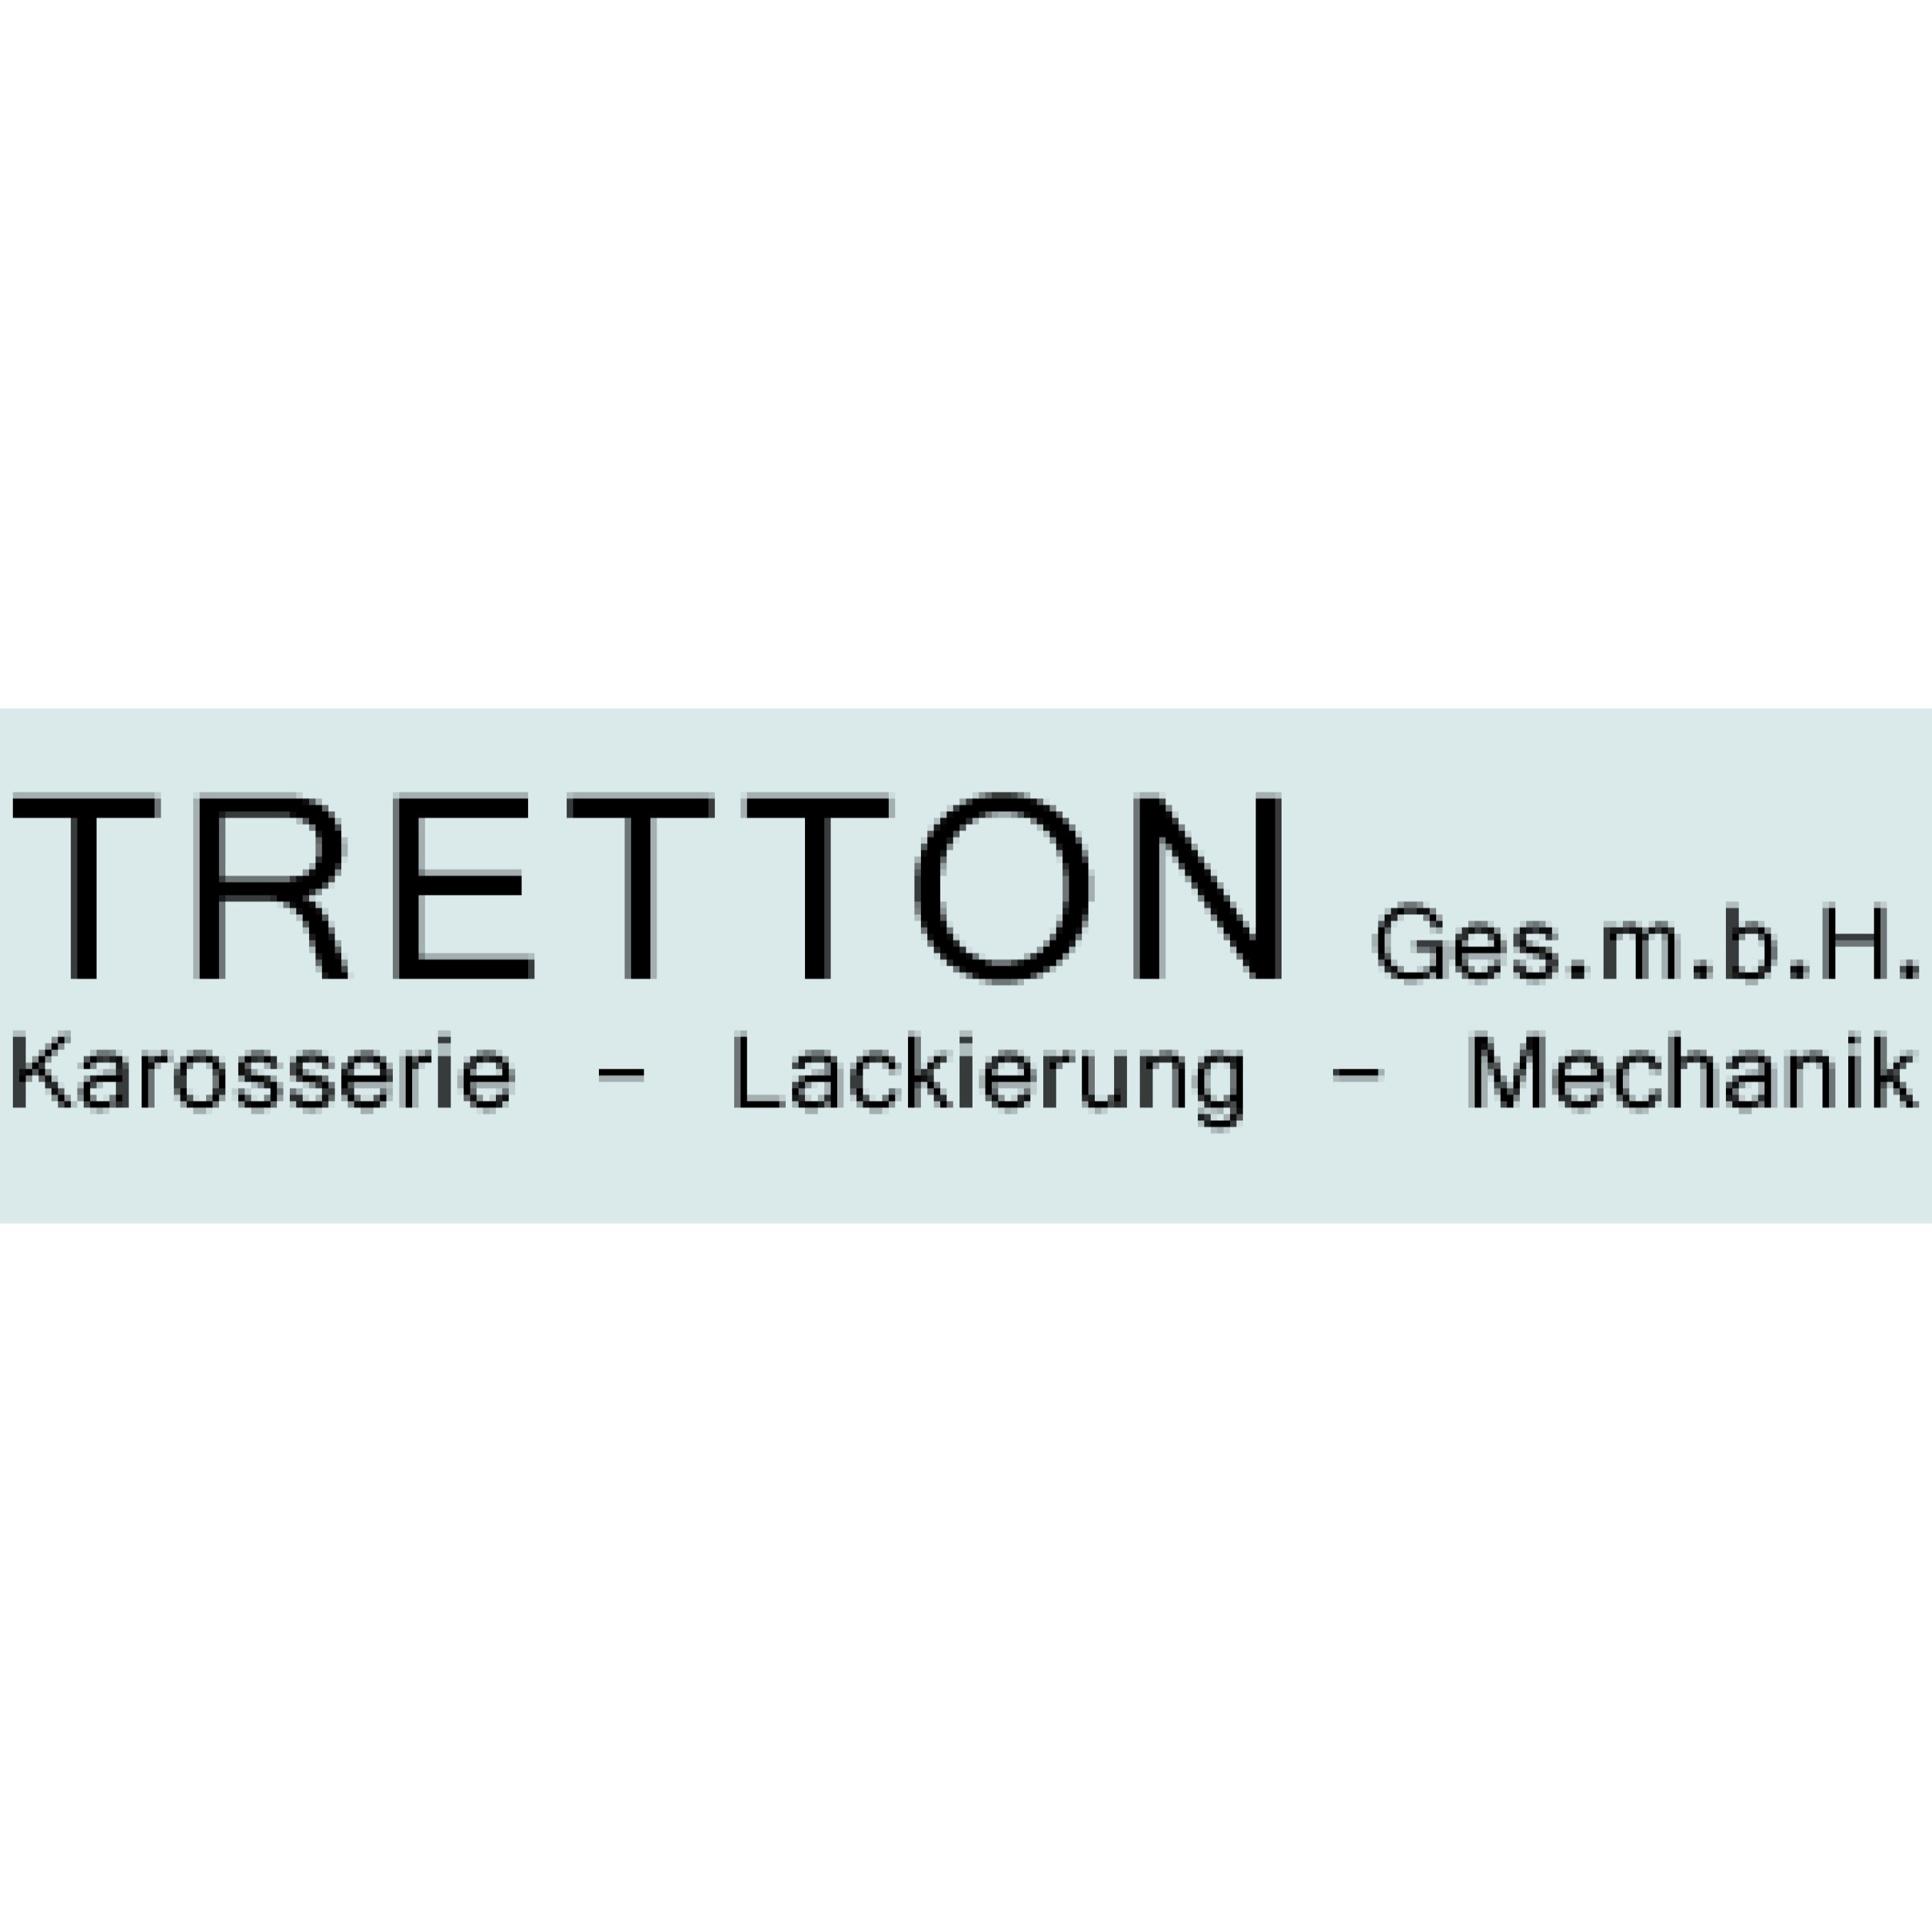 Tretton GesmbH Logo Tretton GesmbH Wien 01 6885151